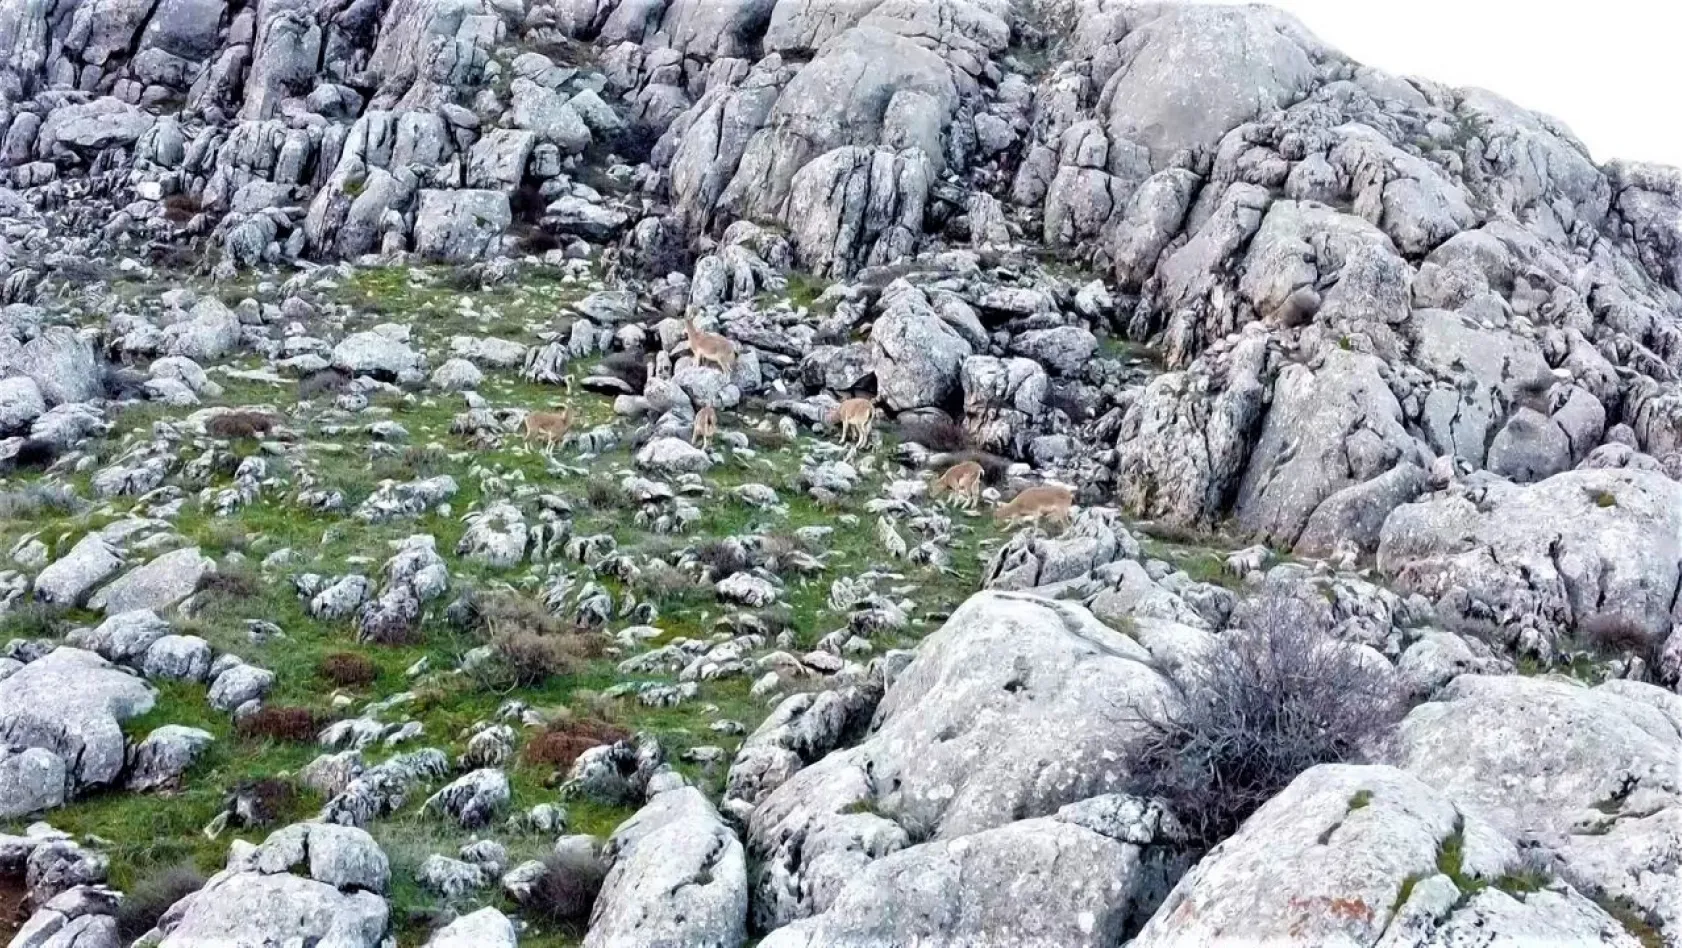 Elazığ'da dağ keçileri görüntülendi